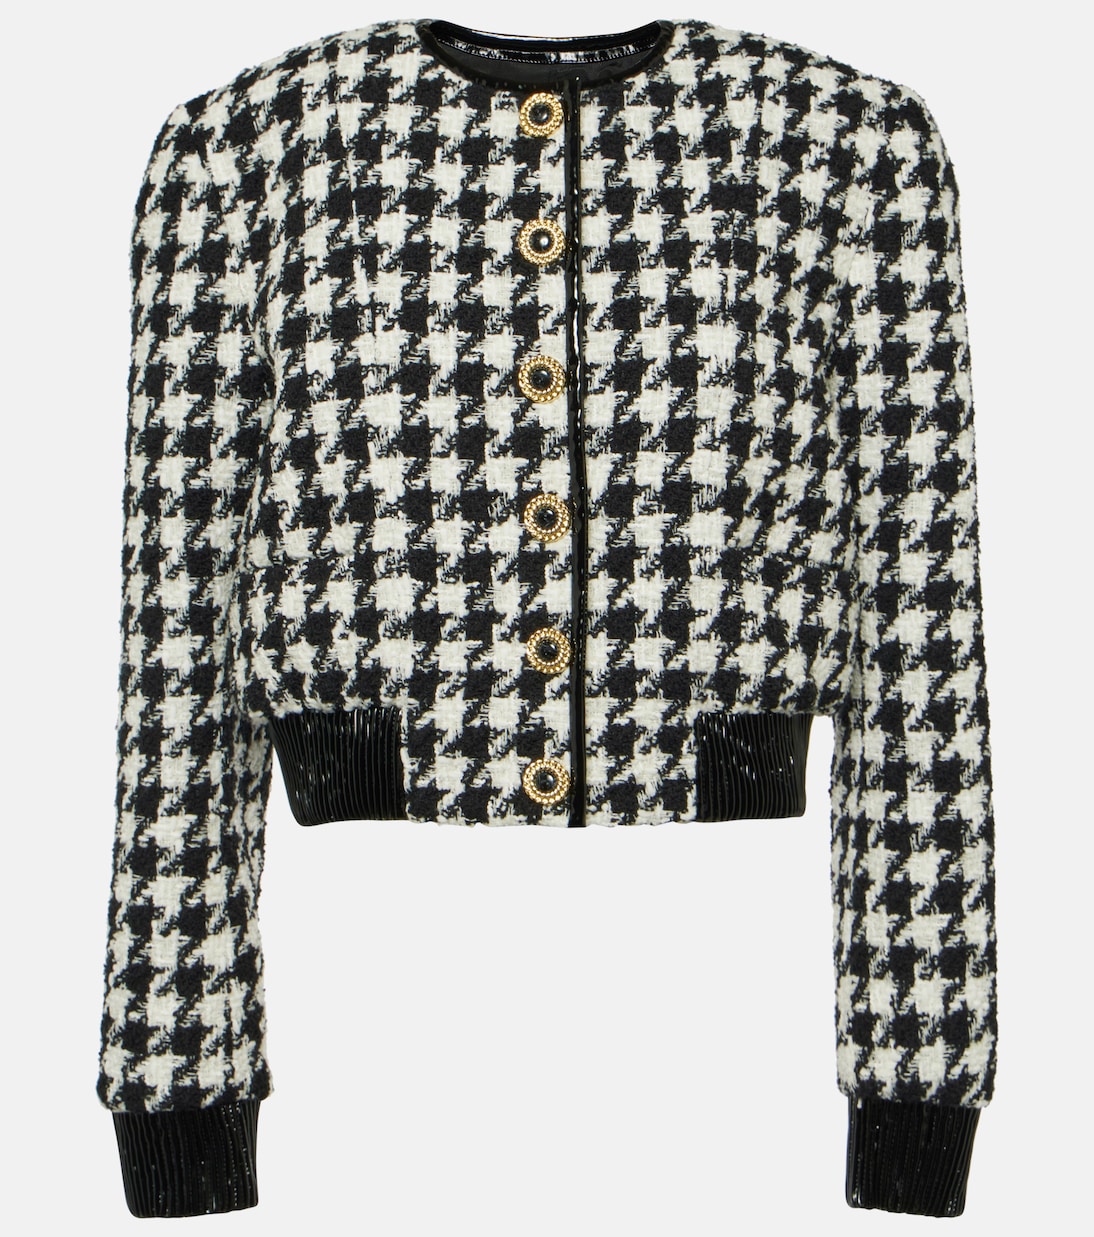 Твидовый пиджак с узором «гусиные лапки» Balmain, черный женский твидовый блейзер в стиле гусиные лапки